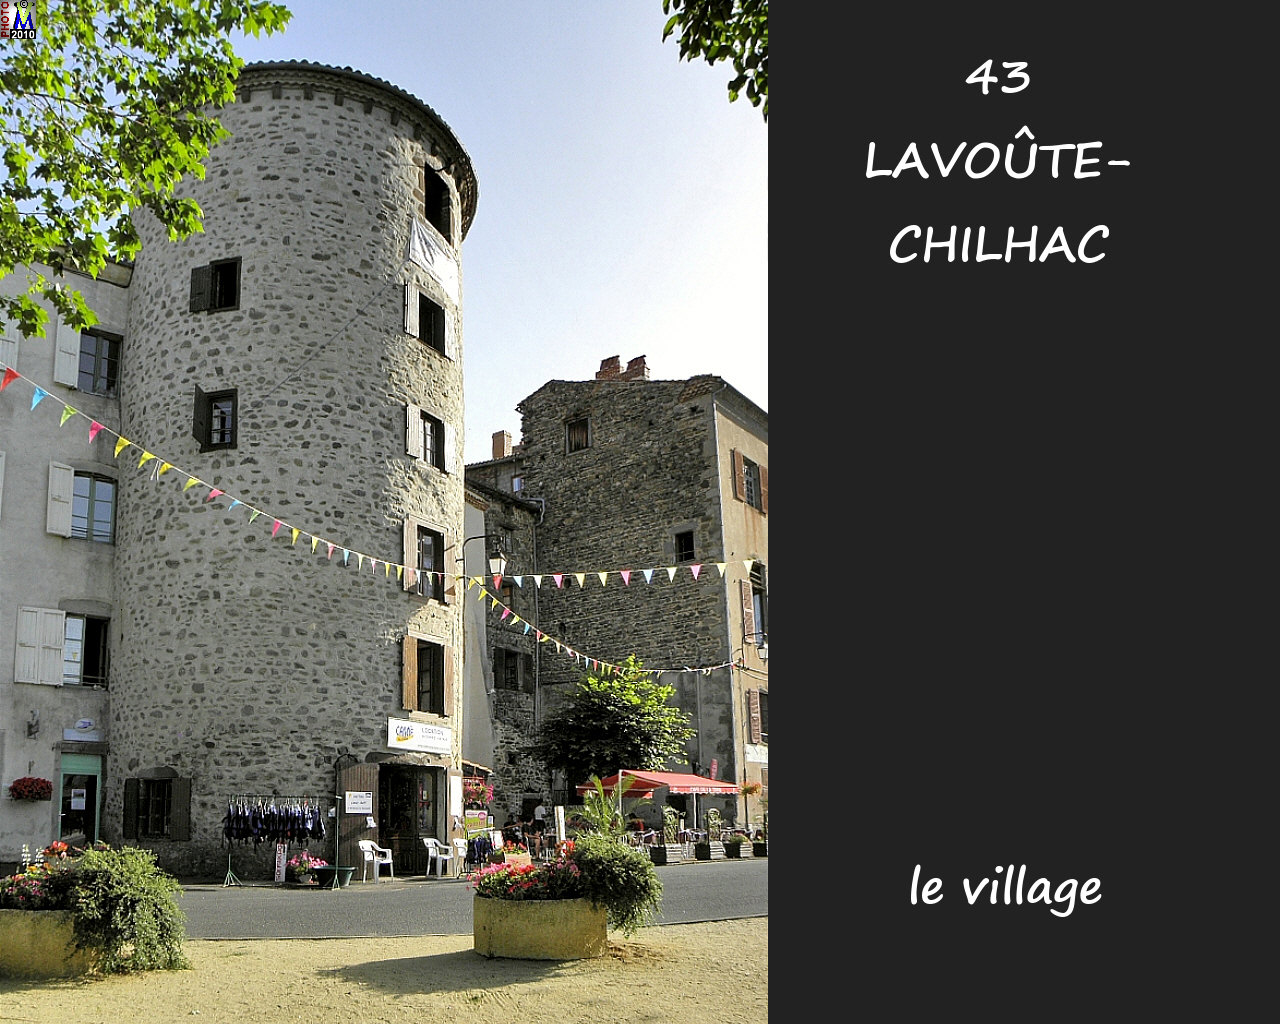 43LAVOUTE-CHILHAC_village_148.jpg